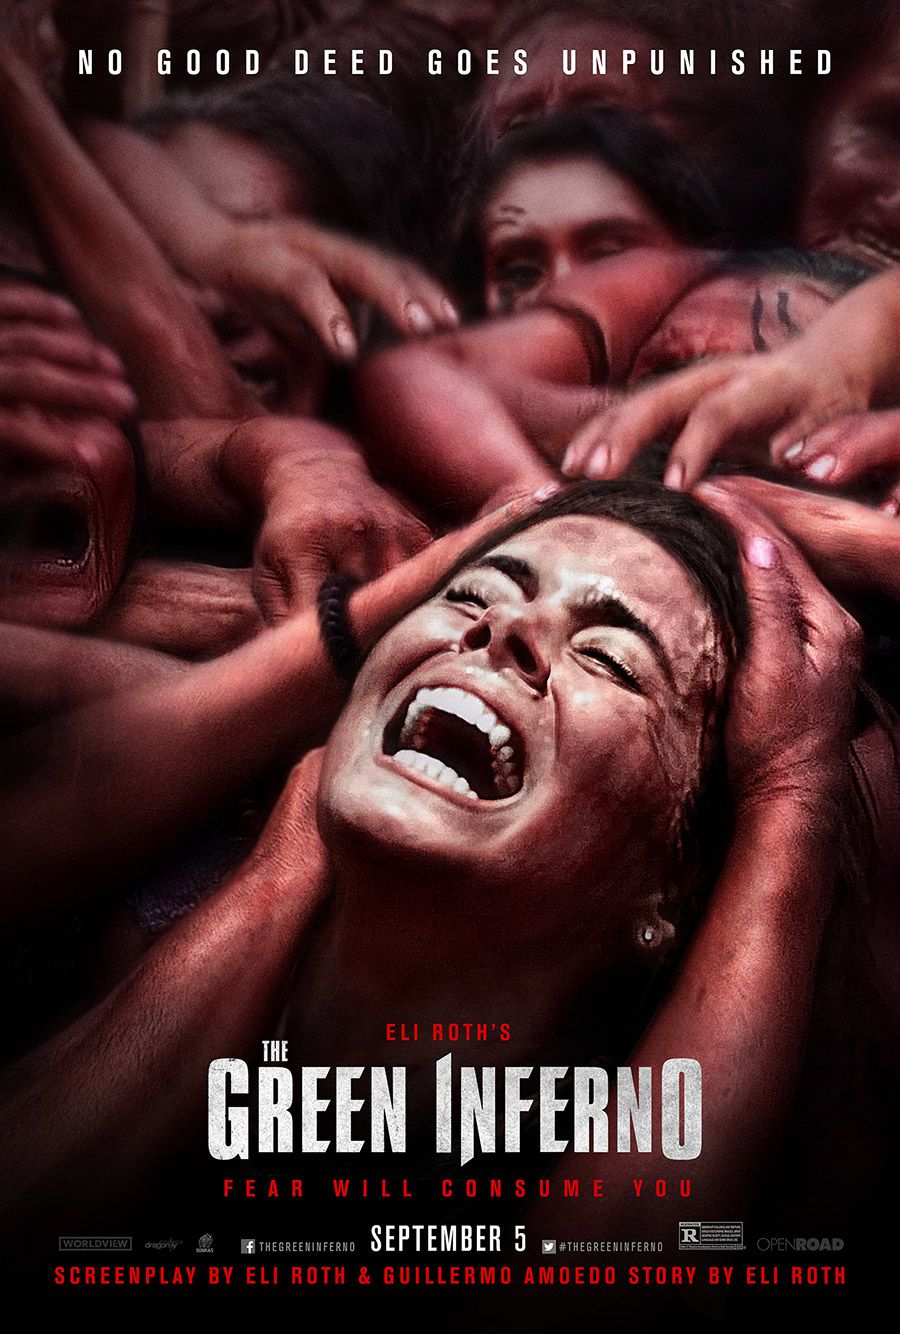 Les cannibales de The Green Inferno seront interdits aux mineurs au Royaume-Uni